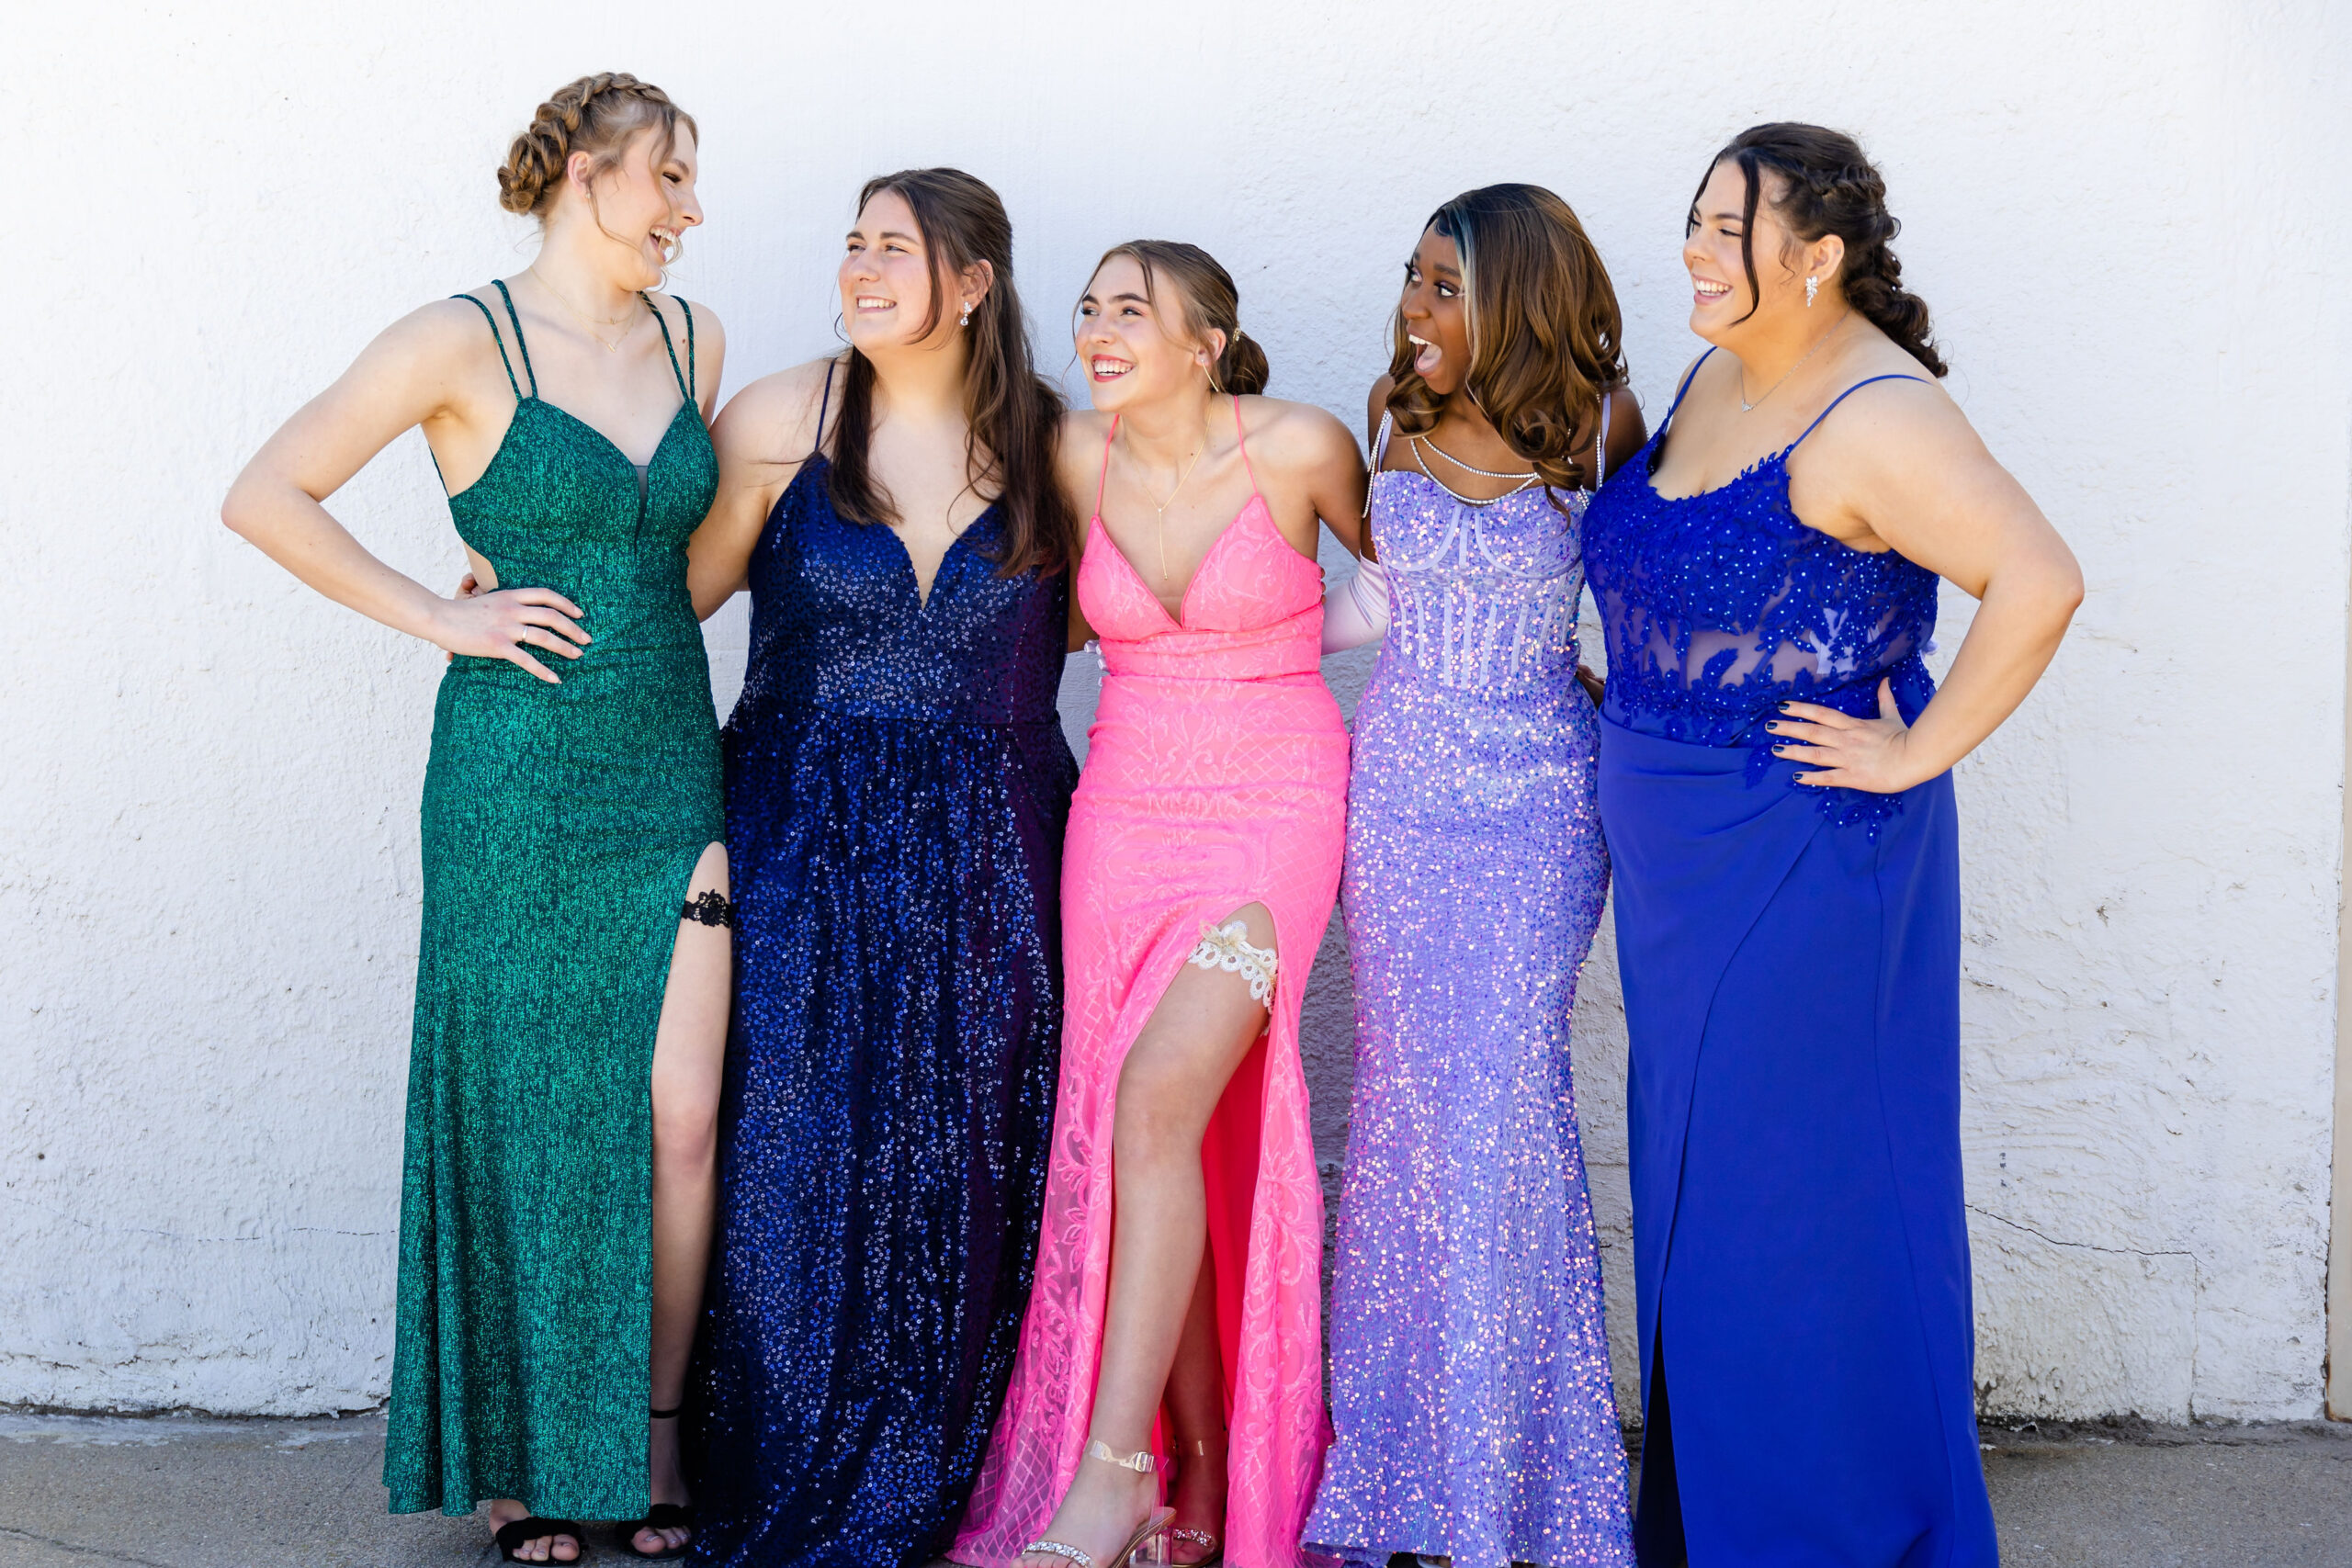 High School senior girls in nebraska wearing prom dresses